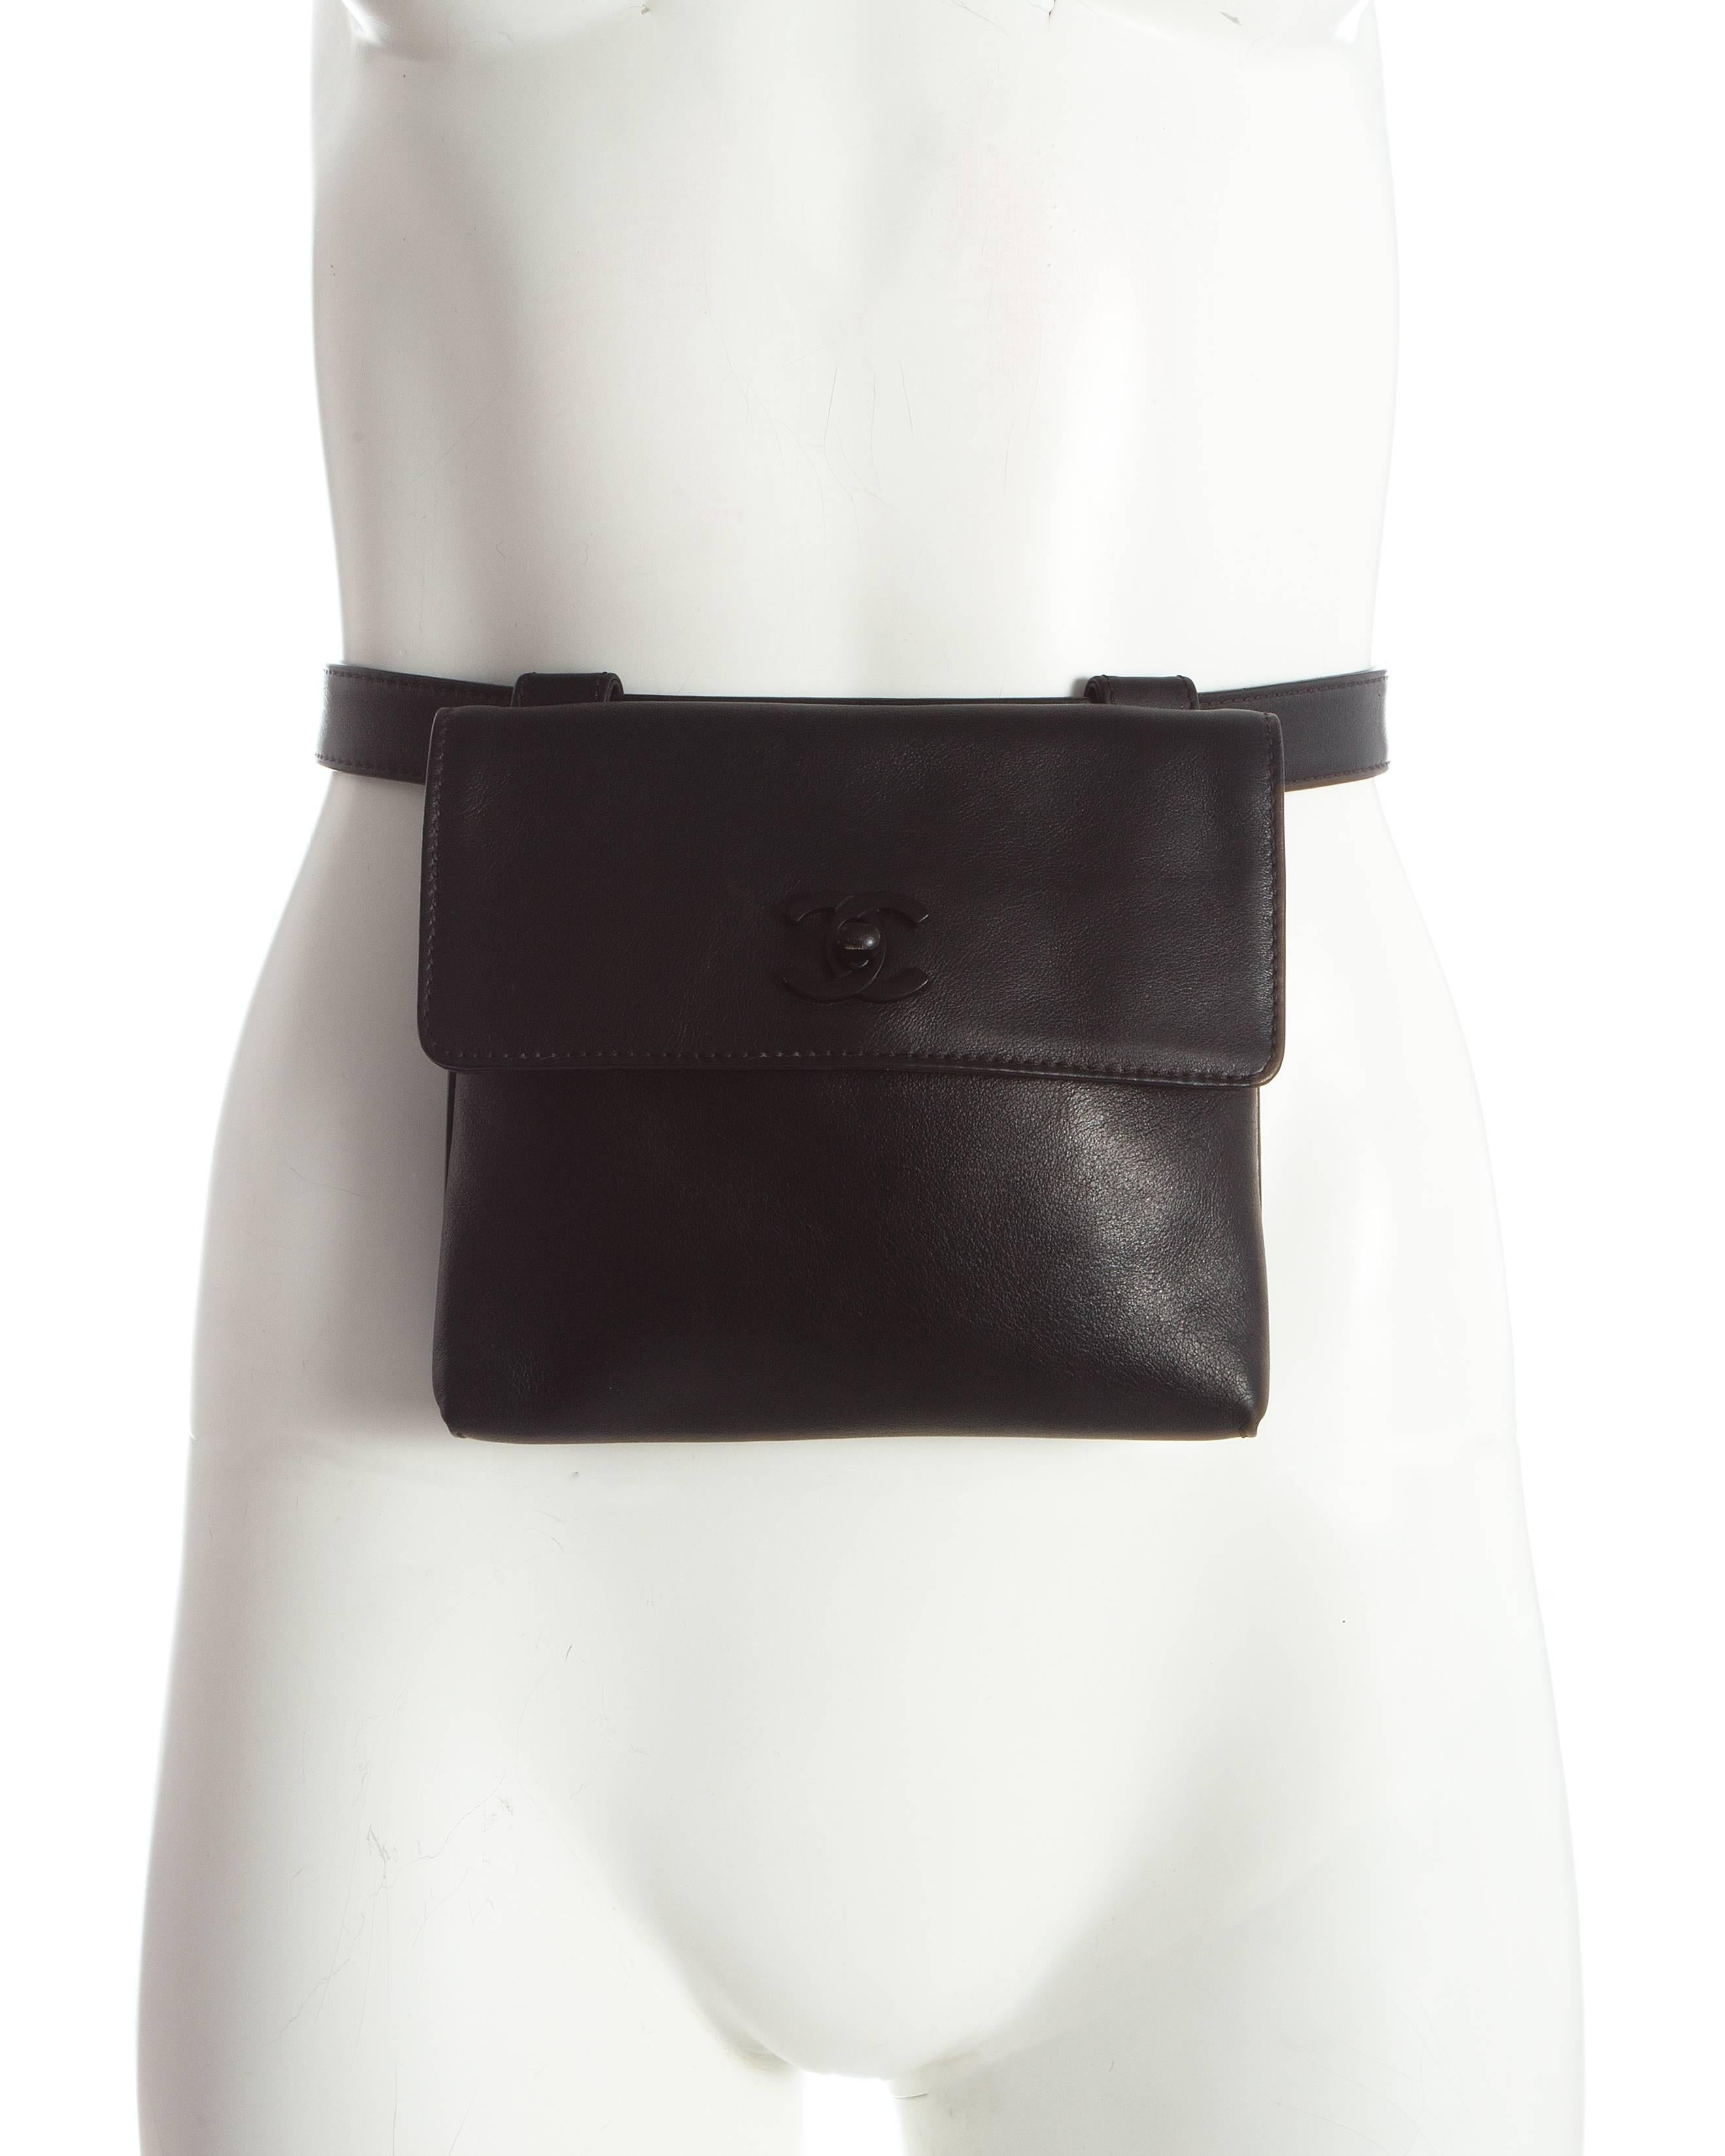 Black Chanel black leather flap bag with adjustable waist belt, c. 1999